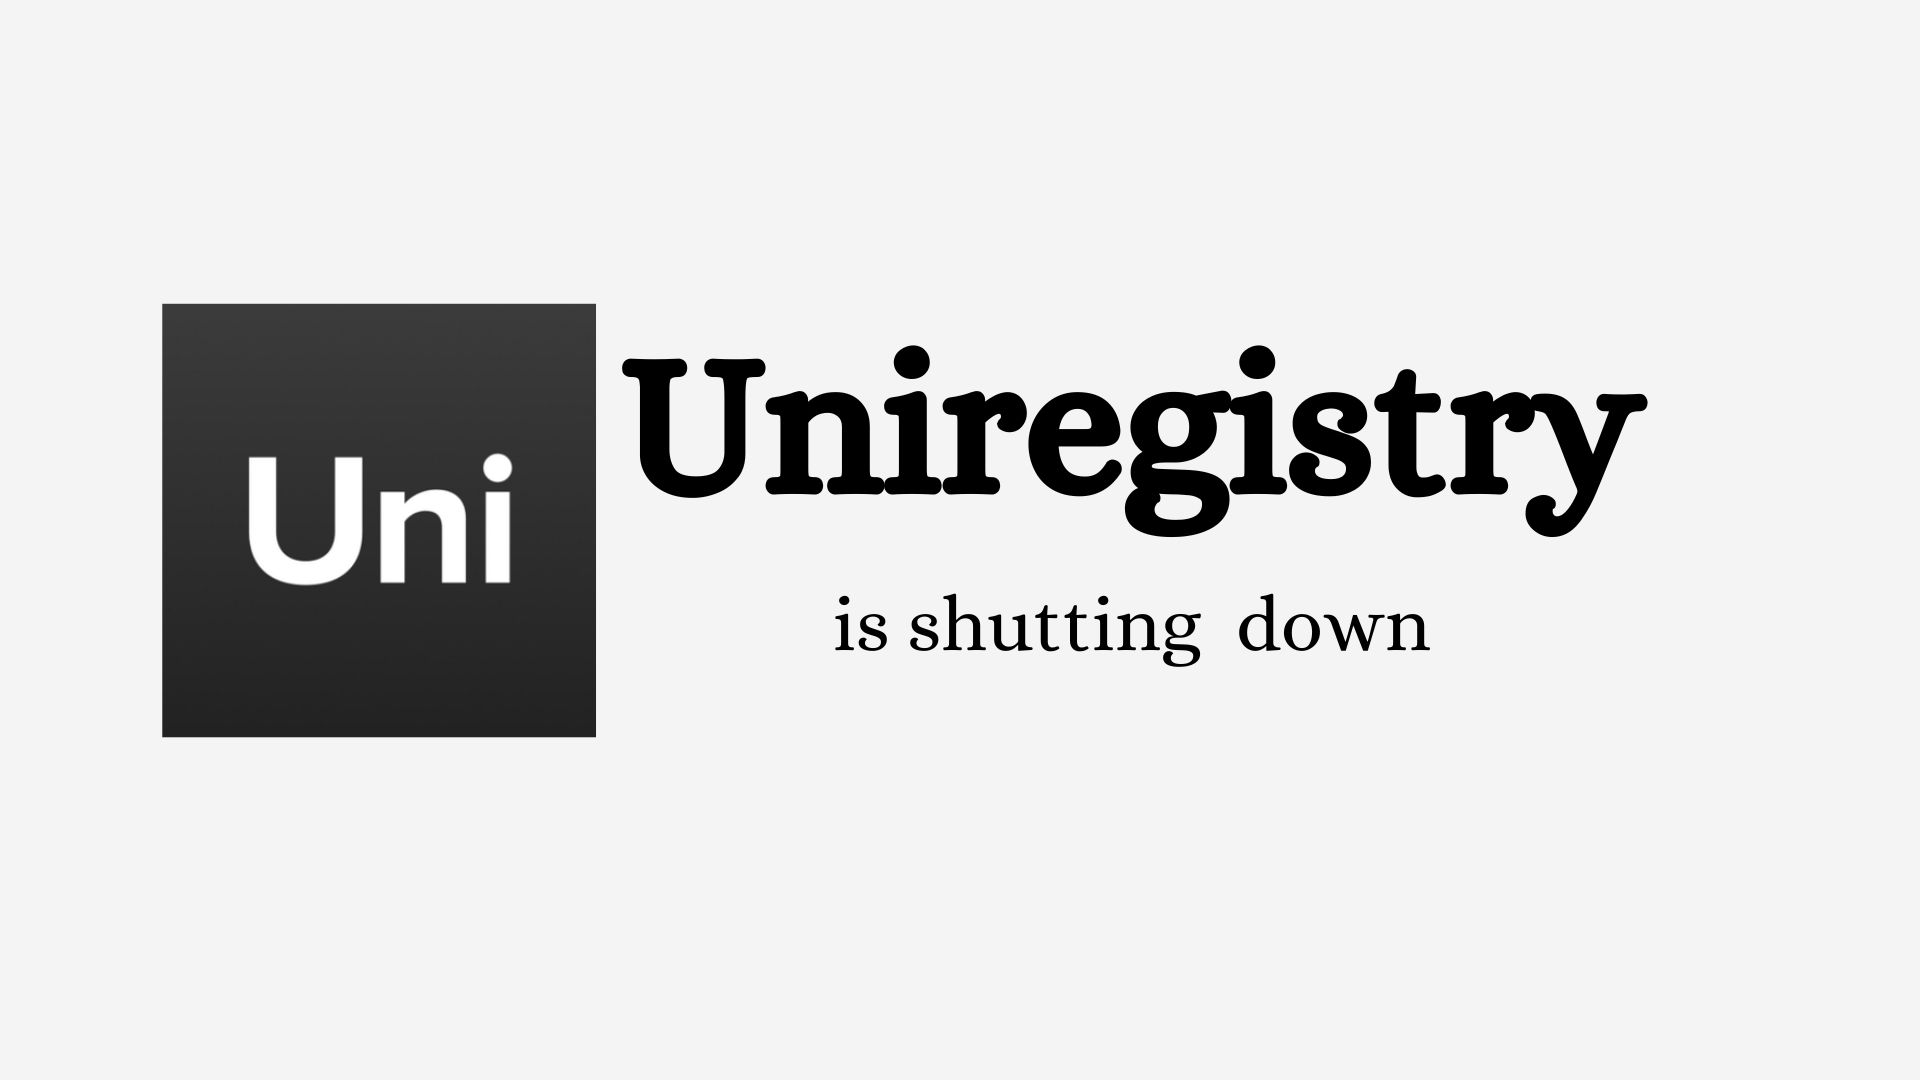 Godaddy to shutdown Uniregistry